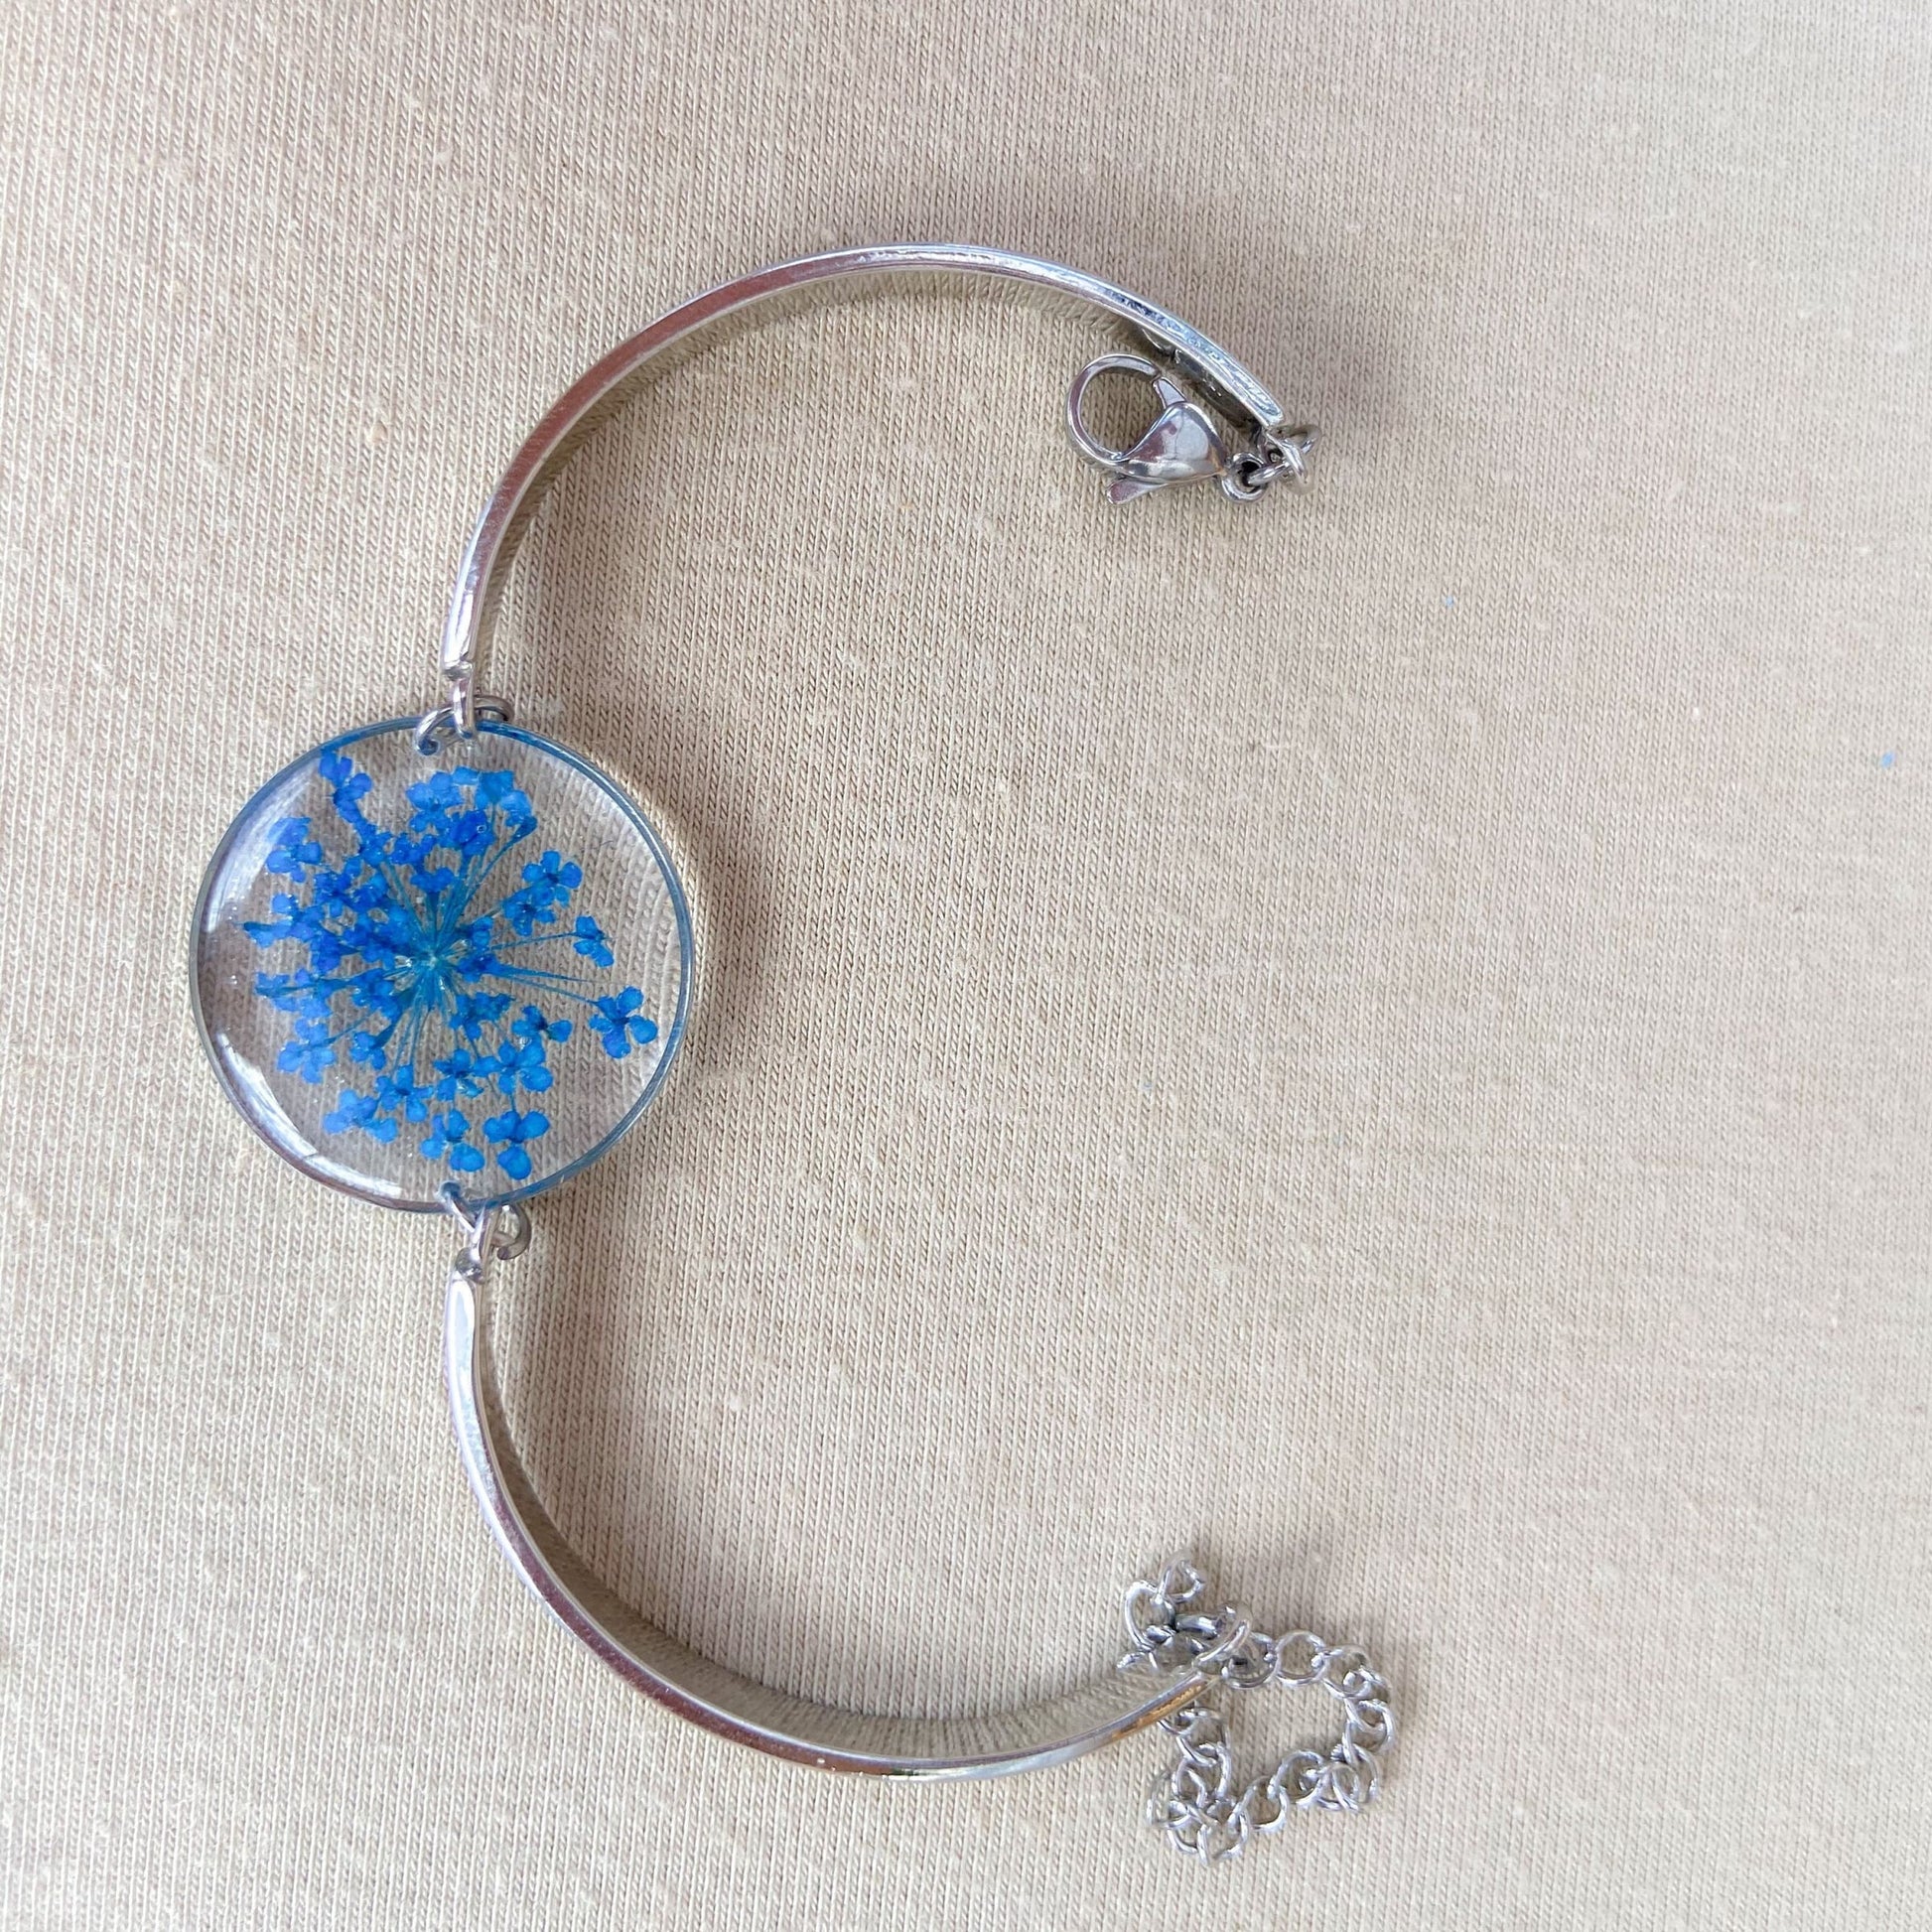 Bracelet de fleurs en dentelle bleu Queen Anne avec fleur pressée en côté cadeau de fête des mères pour elle - Lorred